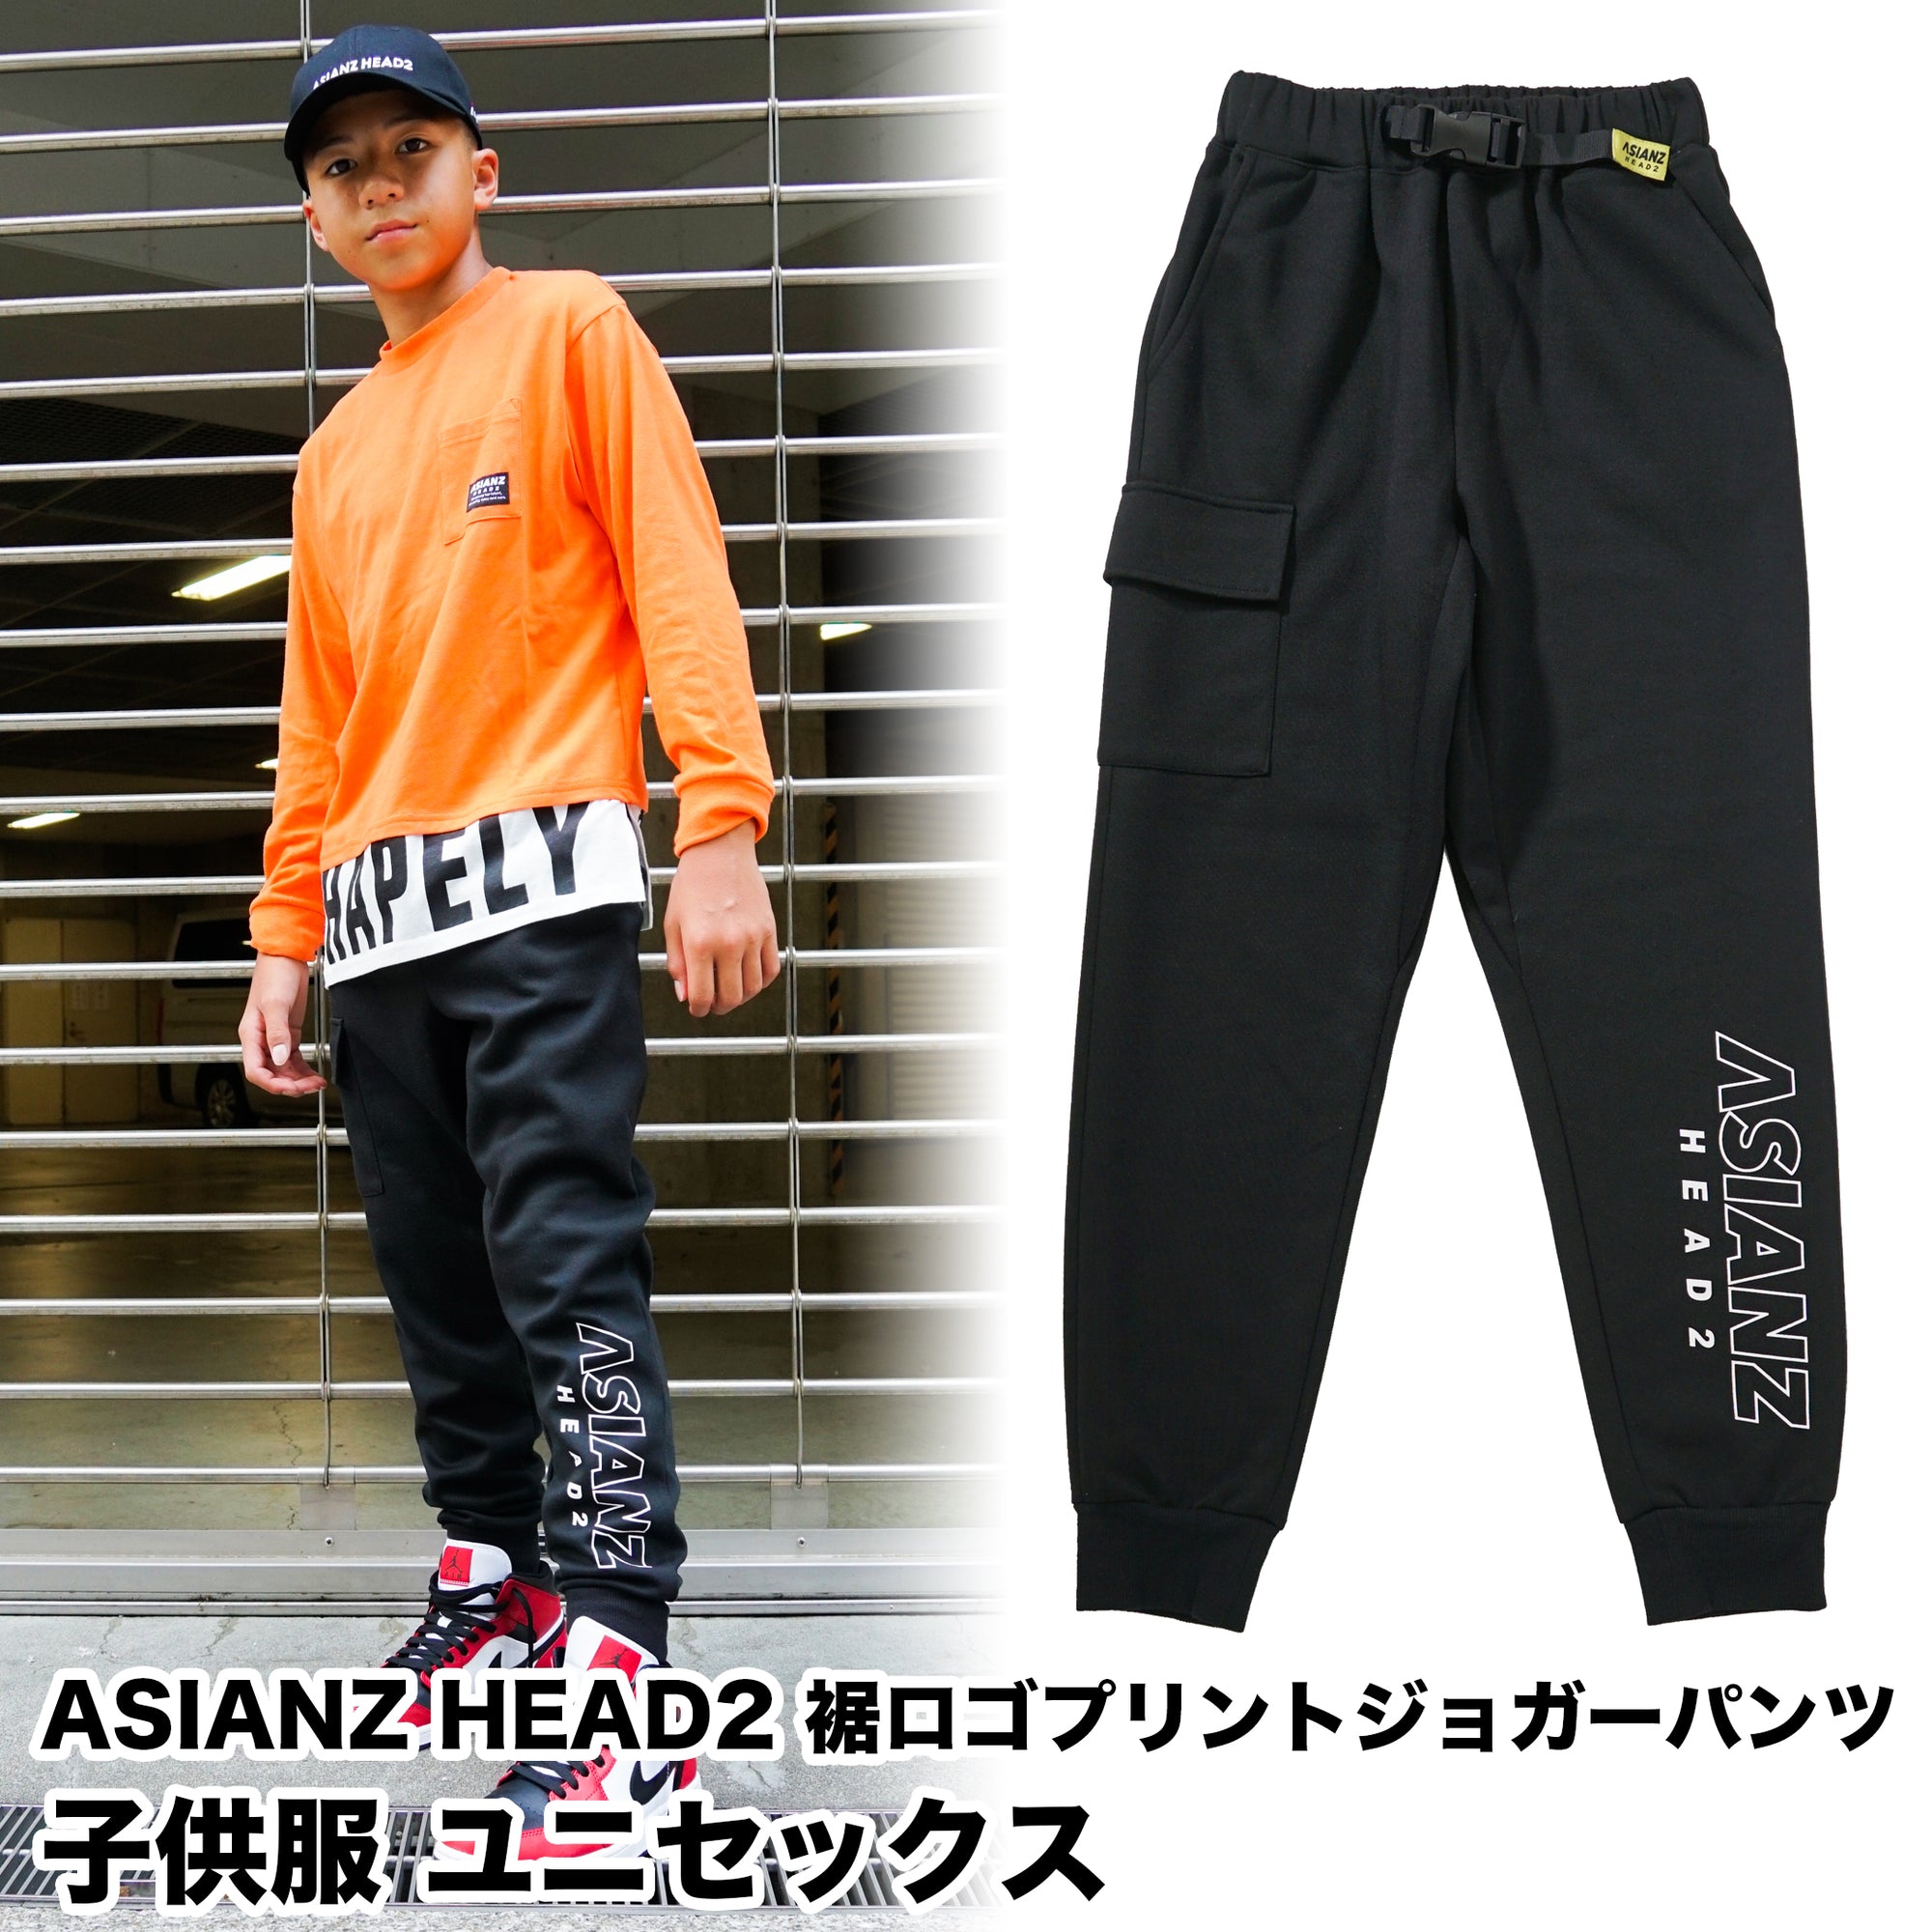 (40%オフ! セール商品)  ASIANZ HEAD2 裾ロゴプリントジョガーパンツ キッズウェアー